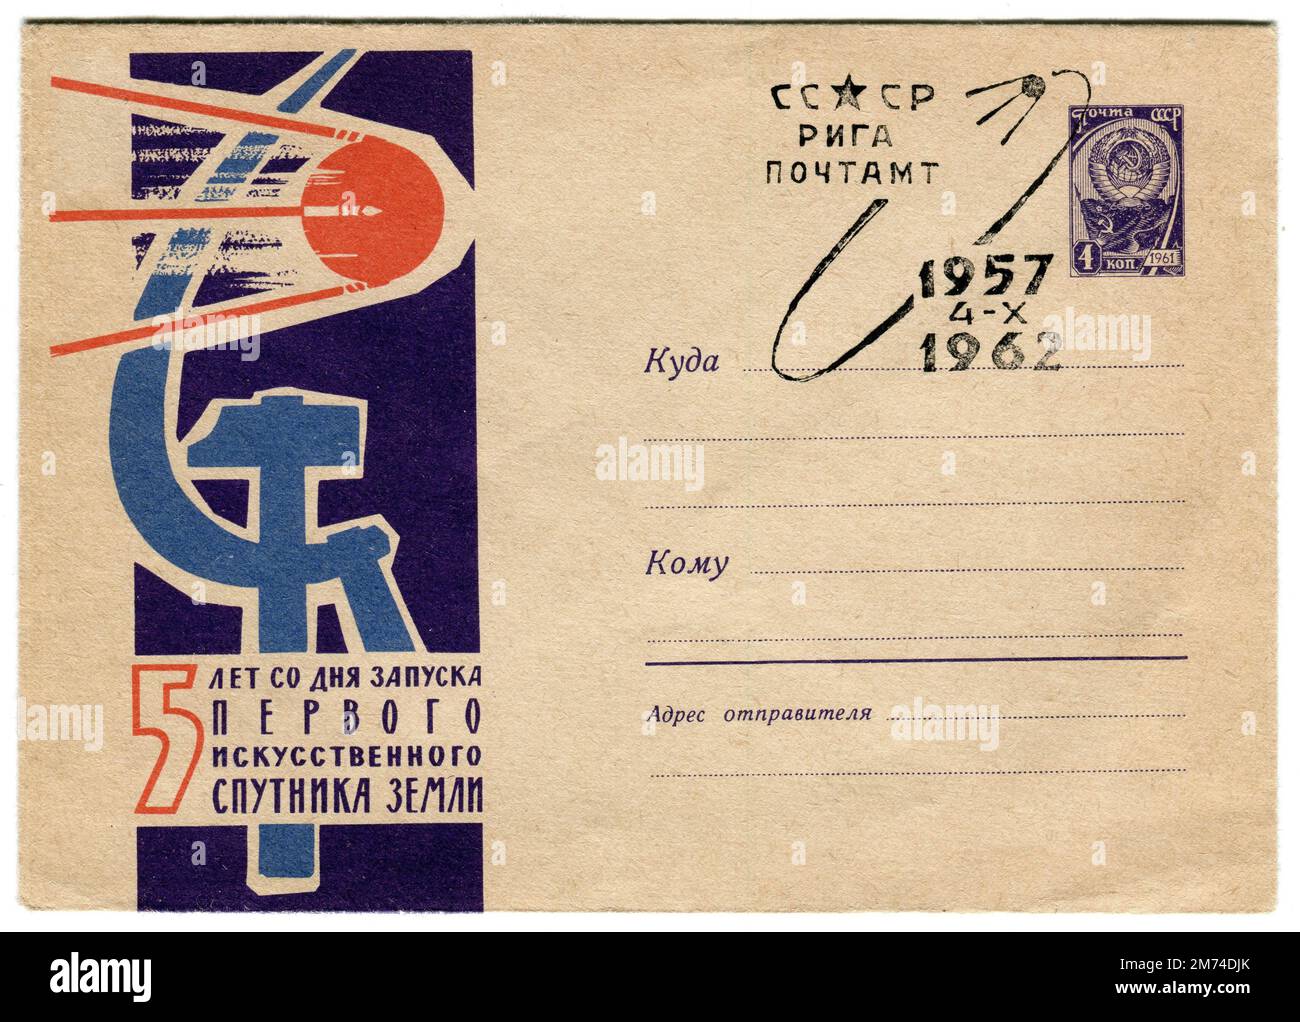 Una copertina spaziale sovietica d’epoca pubblicata il 4 ottobre 1962 per commemorare il 5th° anniversario del lancio del satellite ‘Sputnik’. Sputnik 1 è stato il primo satellite artificiale della Terra che è stato lanciato in un'orbita ellittica della bassa Terra dall'Unione Sovietica il 4 ottobre 1957 come parte del programma spaziale sovietico. Ha inviato un segnale radio sulla Terra per tre settimane fino a quando la resistenza aerodinamica lo ha fatto ricadere nell'atmosfera il 4 gennaio 1958. Foto Stock